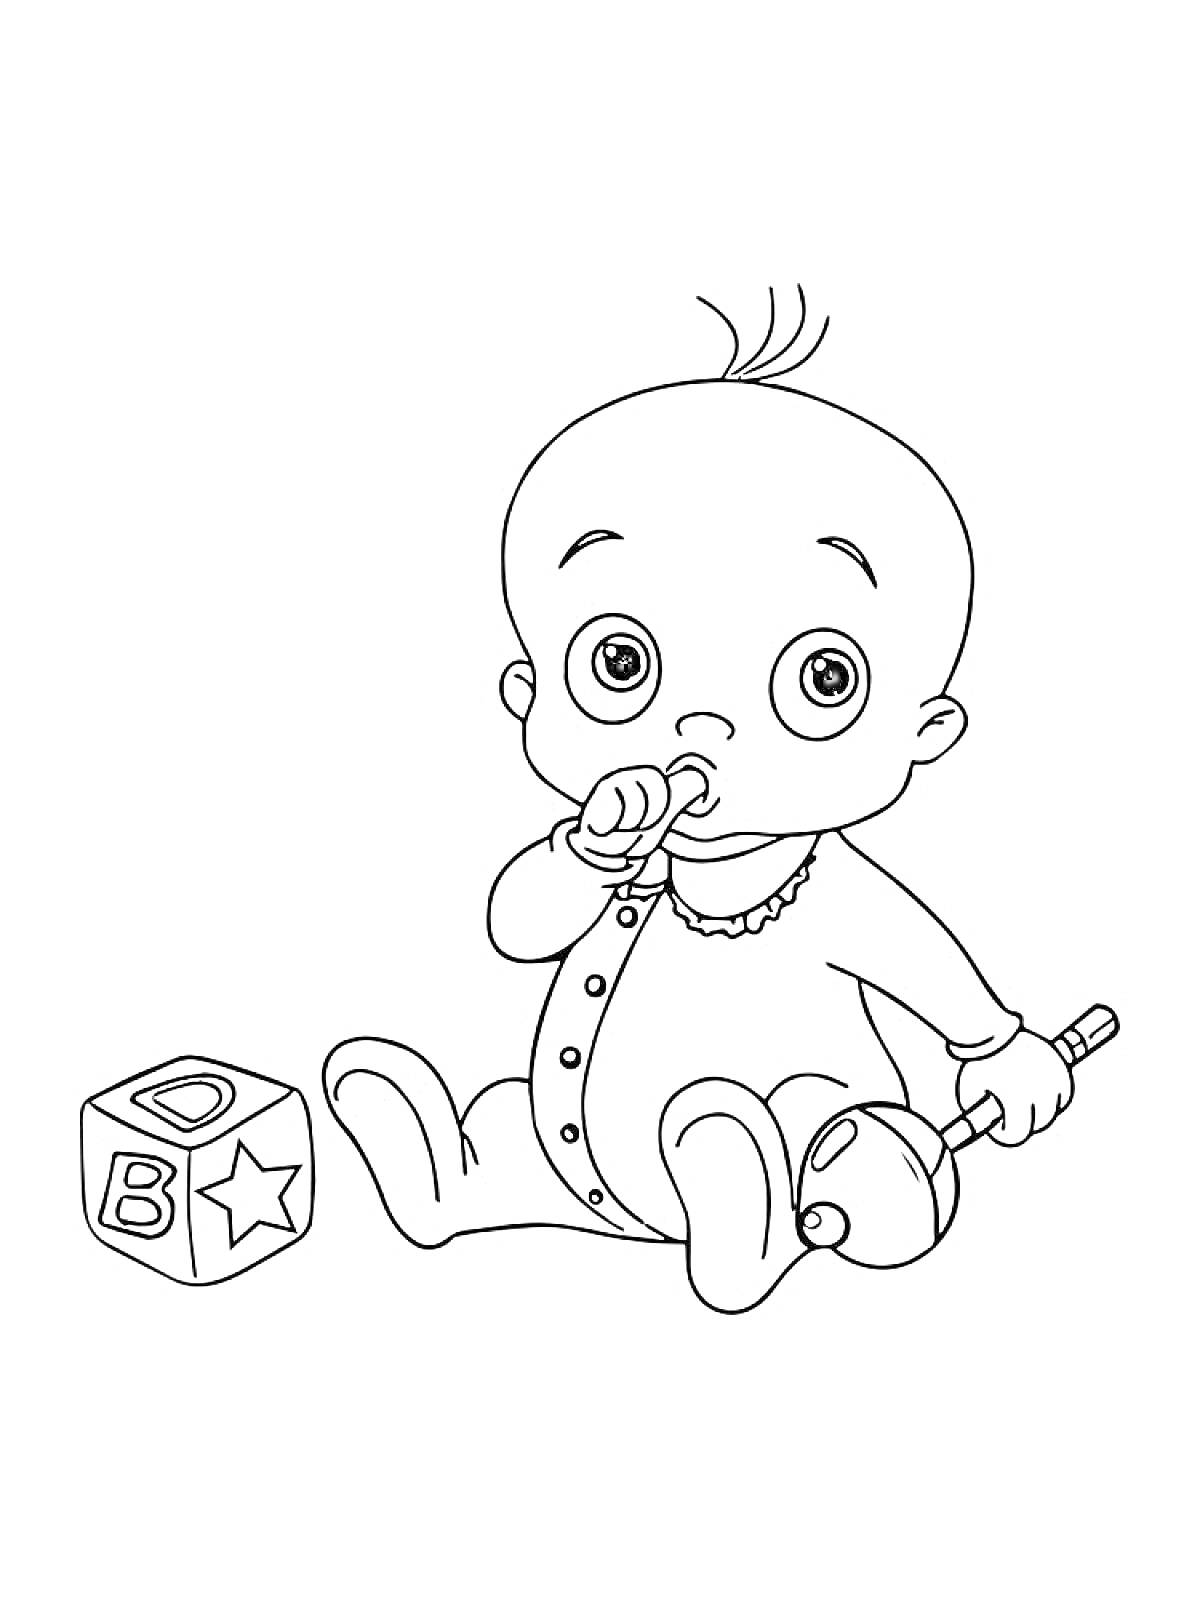 Раскраска Младенец с погремушкой и кубиком (буквы А, В и D нарисованы на сторонах кубика)